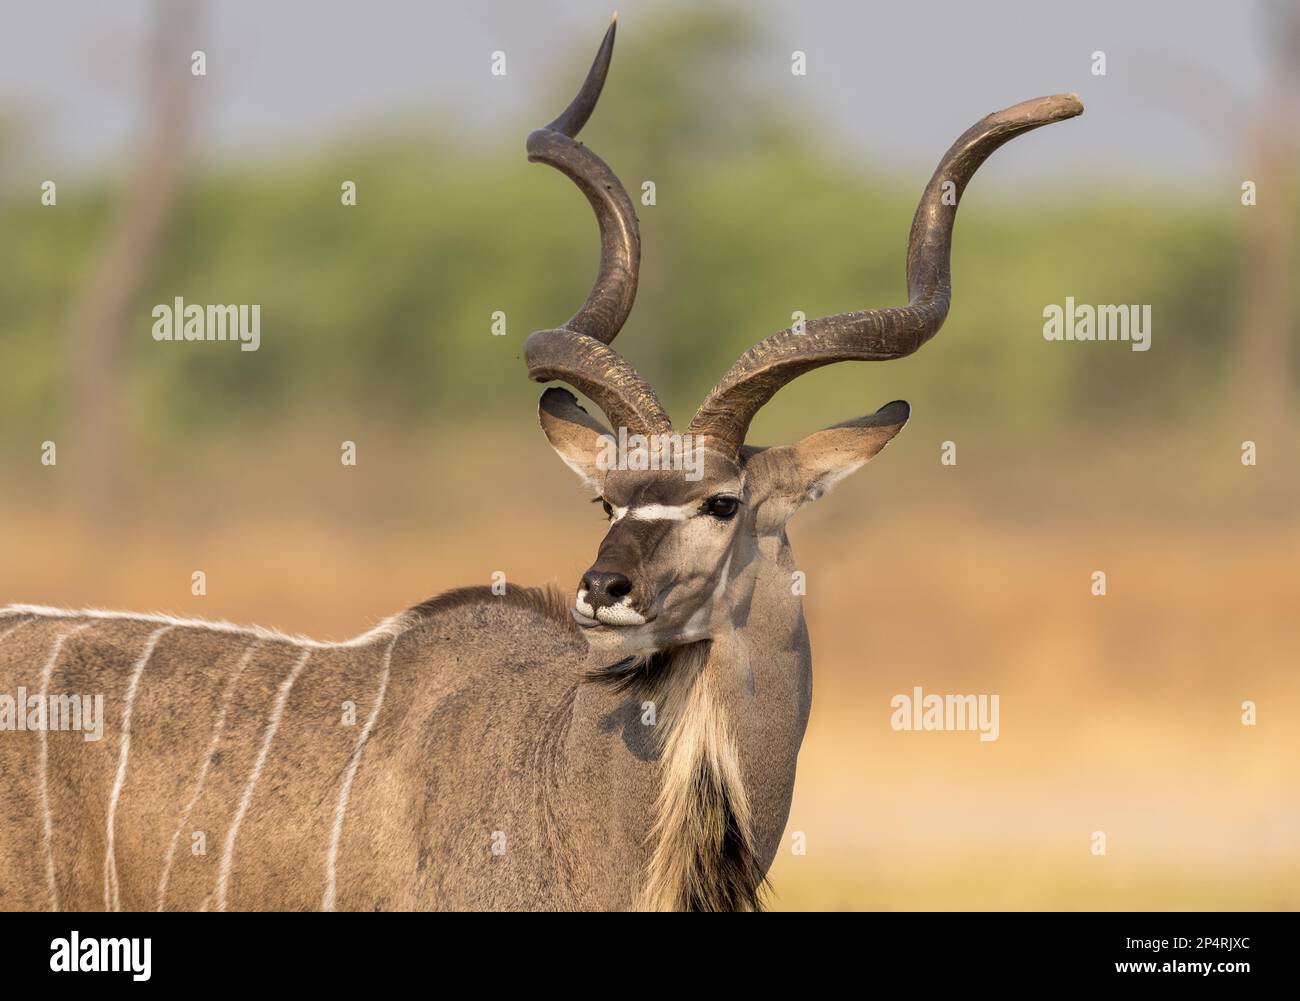 Big male Kudu (Strepsiceros) portrait with creamy background in botswana Stock Photo